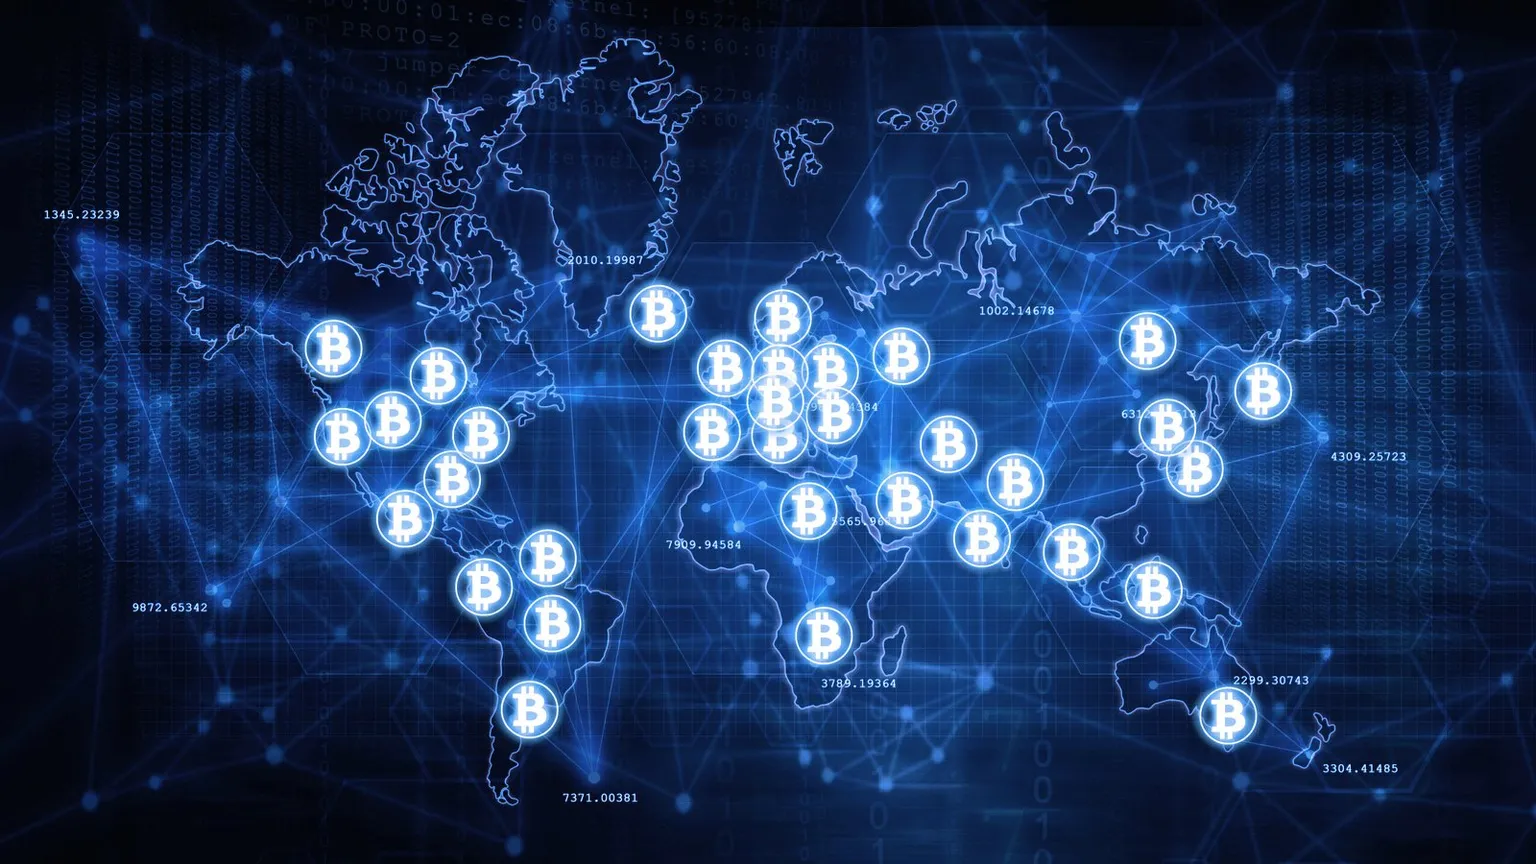 Bitcoin adoption around the world. Image: Shutterstock